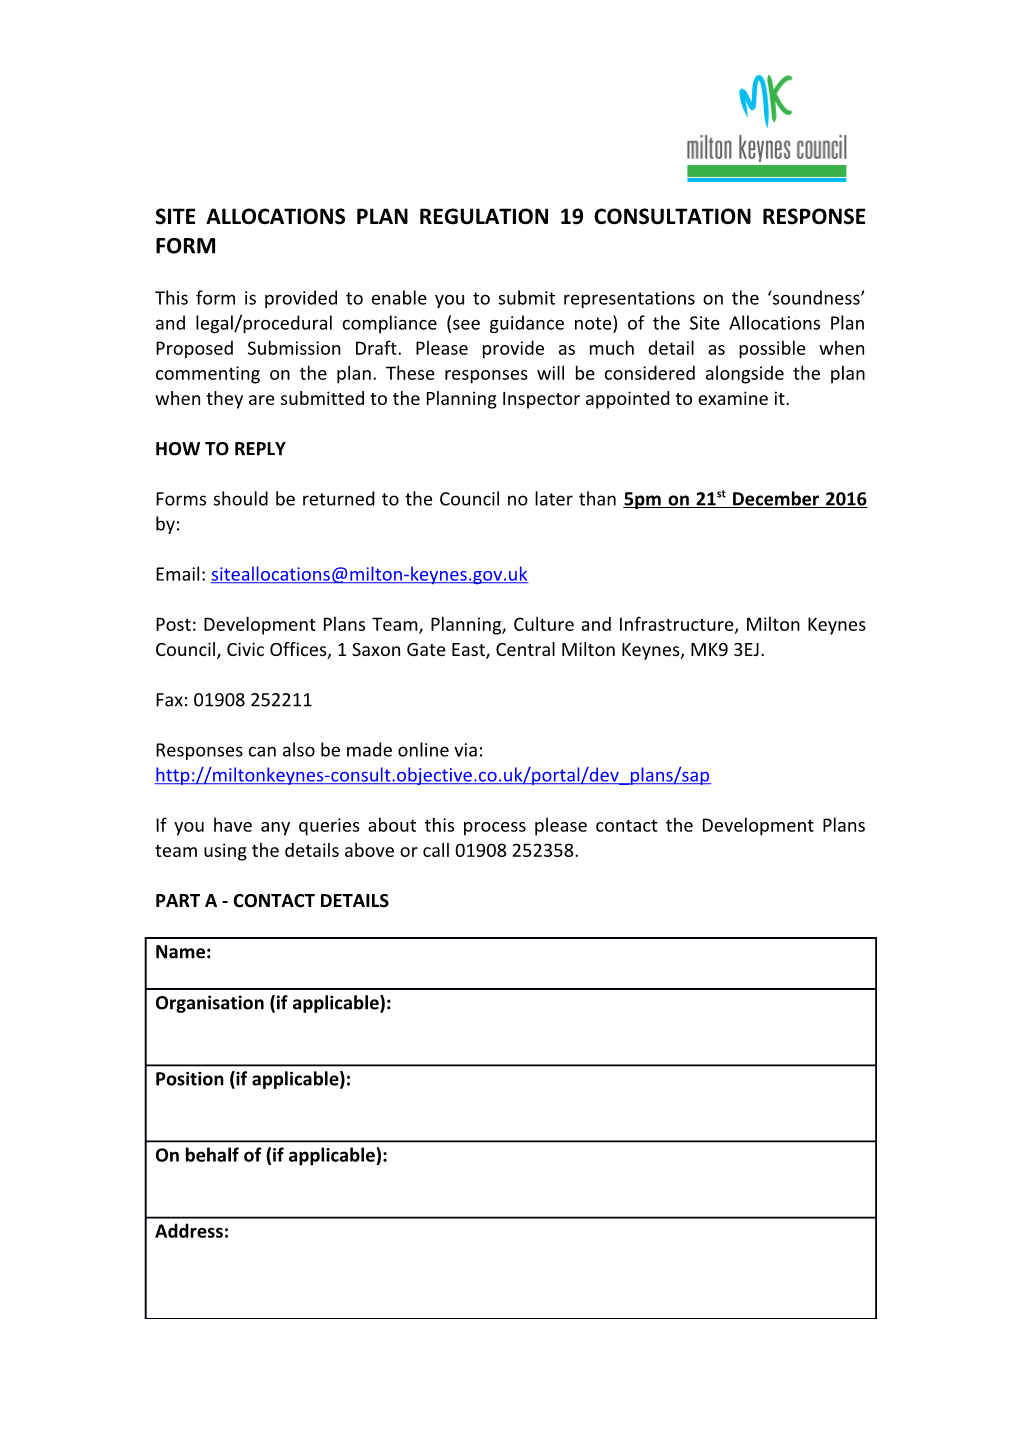 Site Allocationsplan Regulation 19 Consultation Response Form